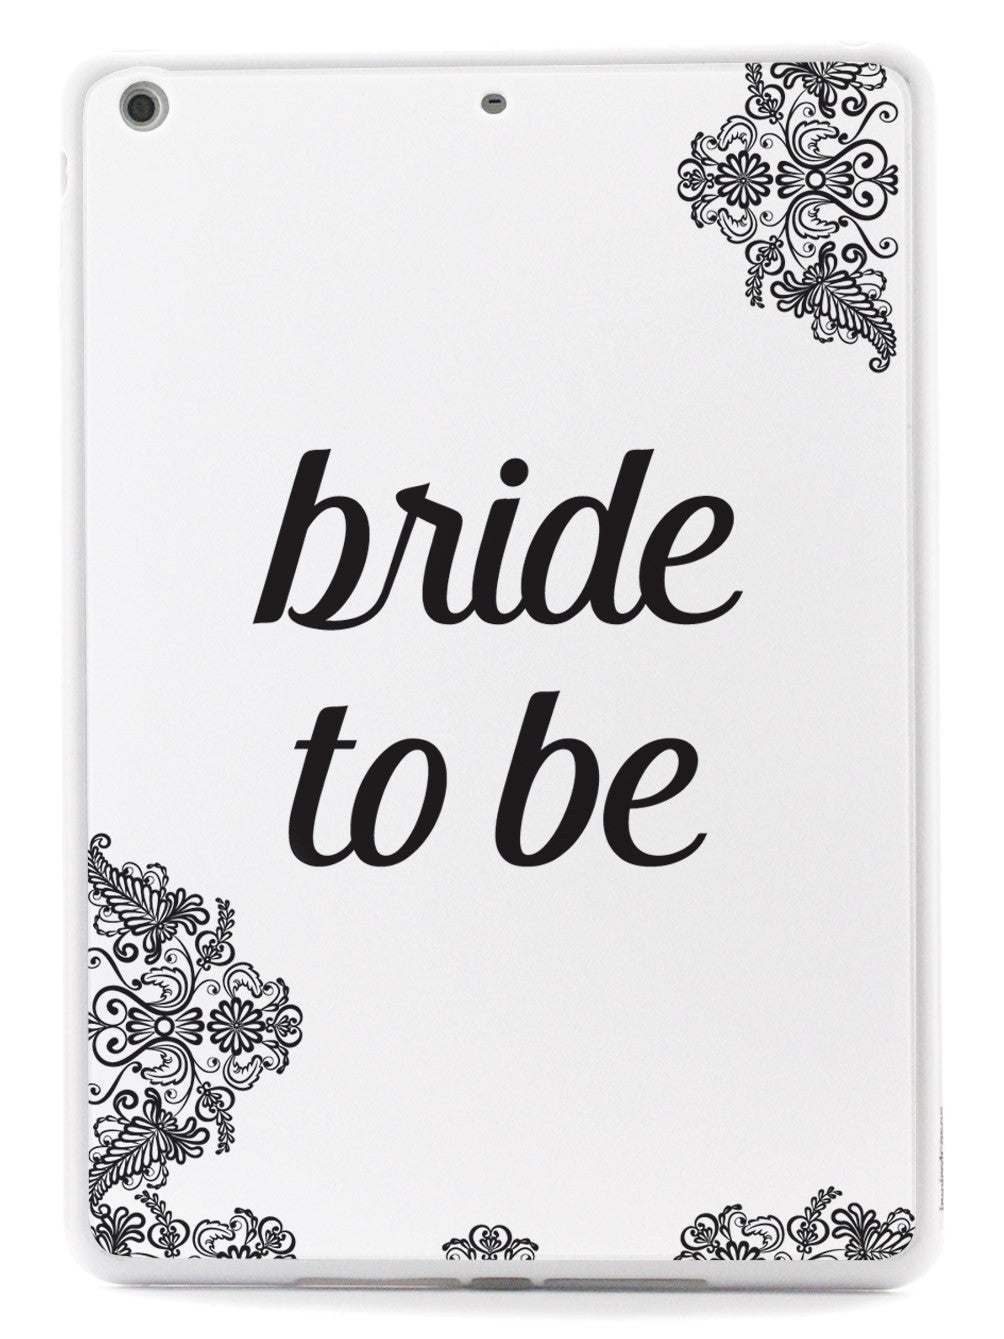 Bride To Be - Bridal Case